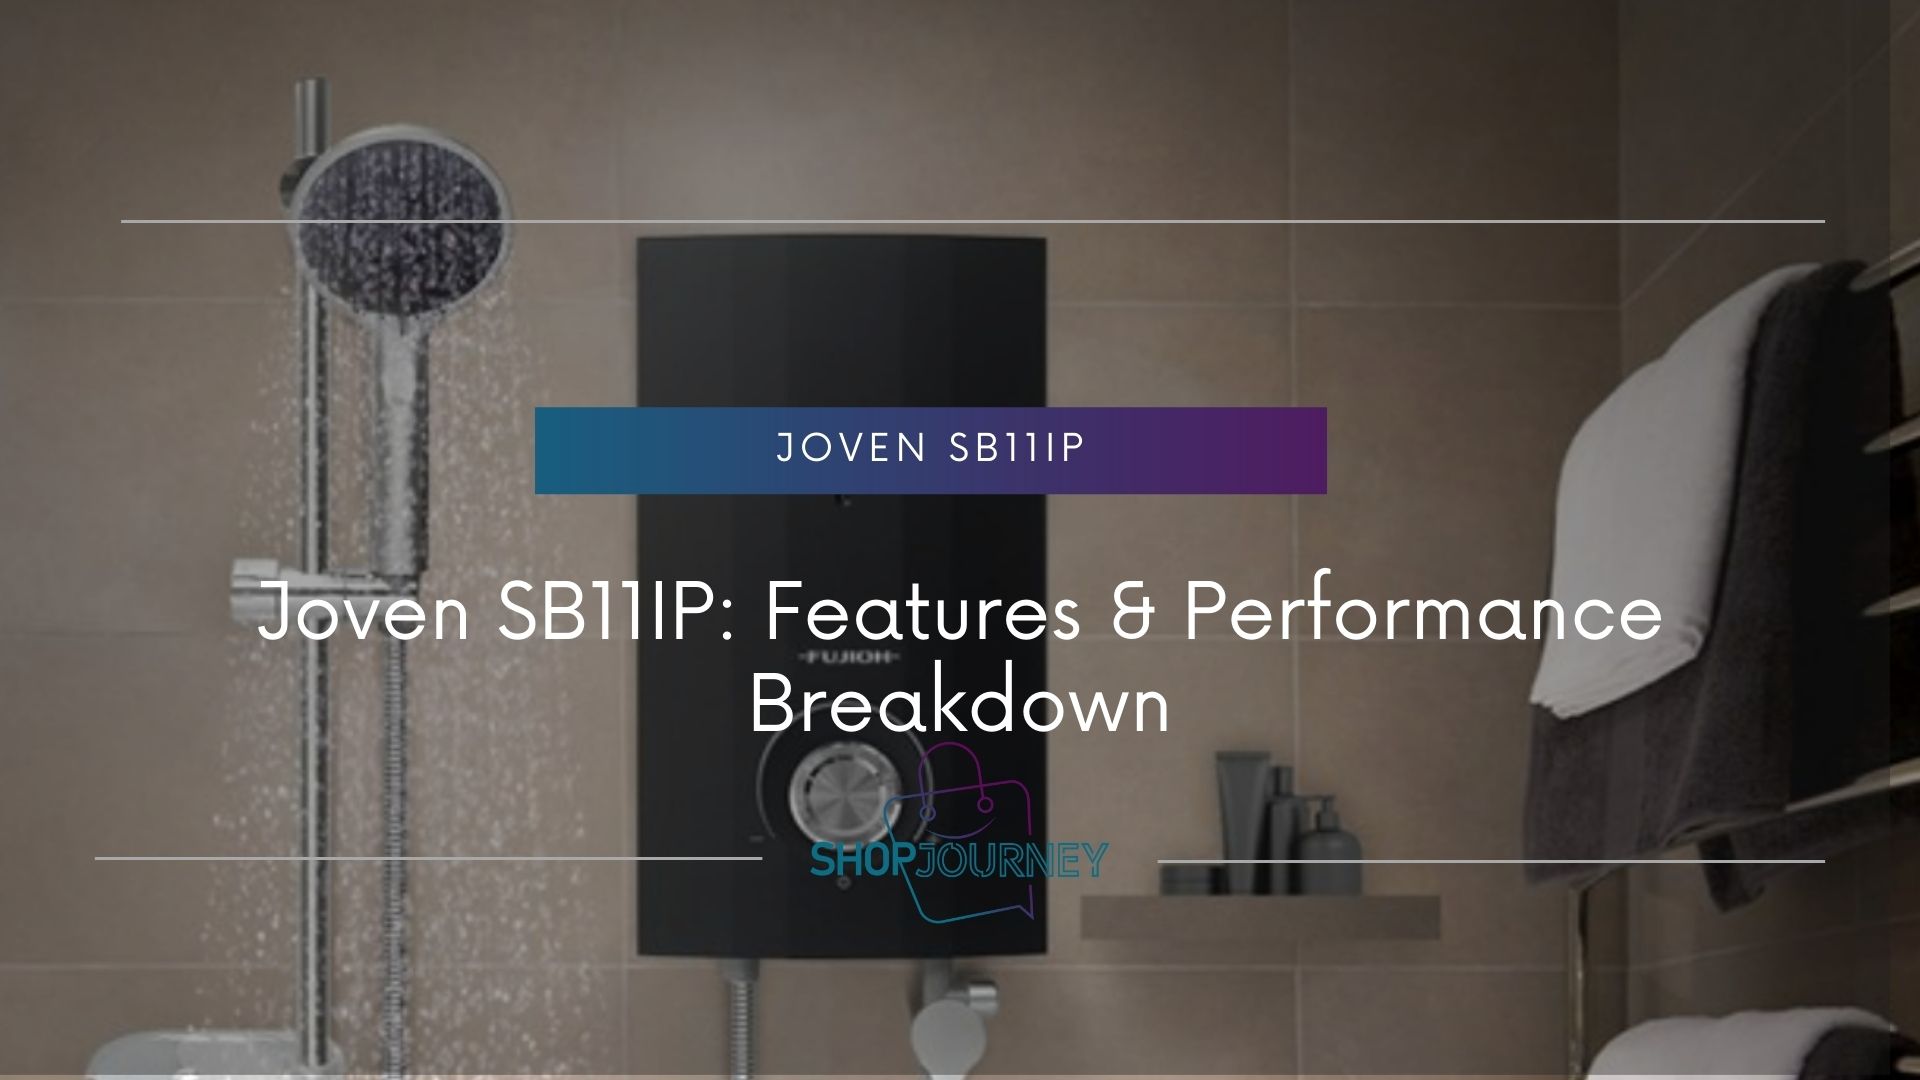 Joven SB11IP - Shop Journey